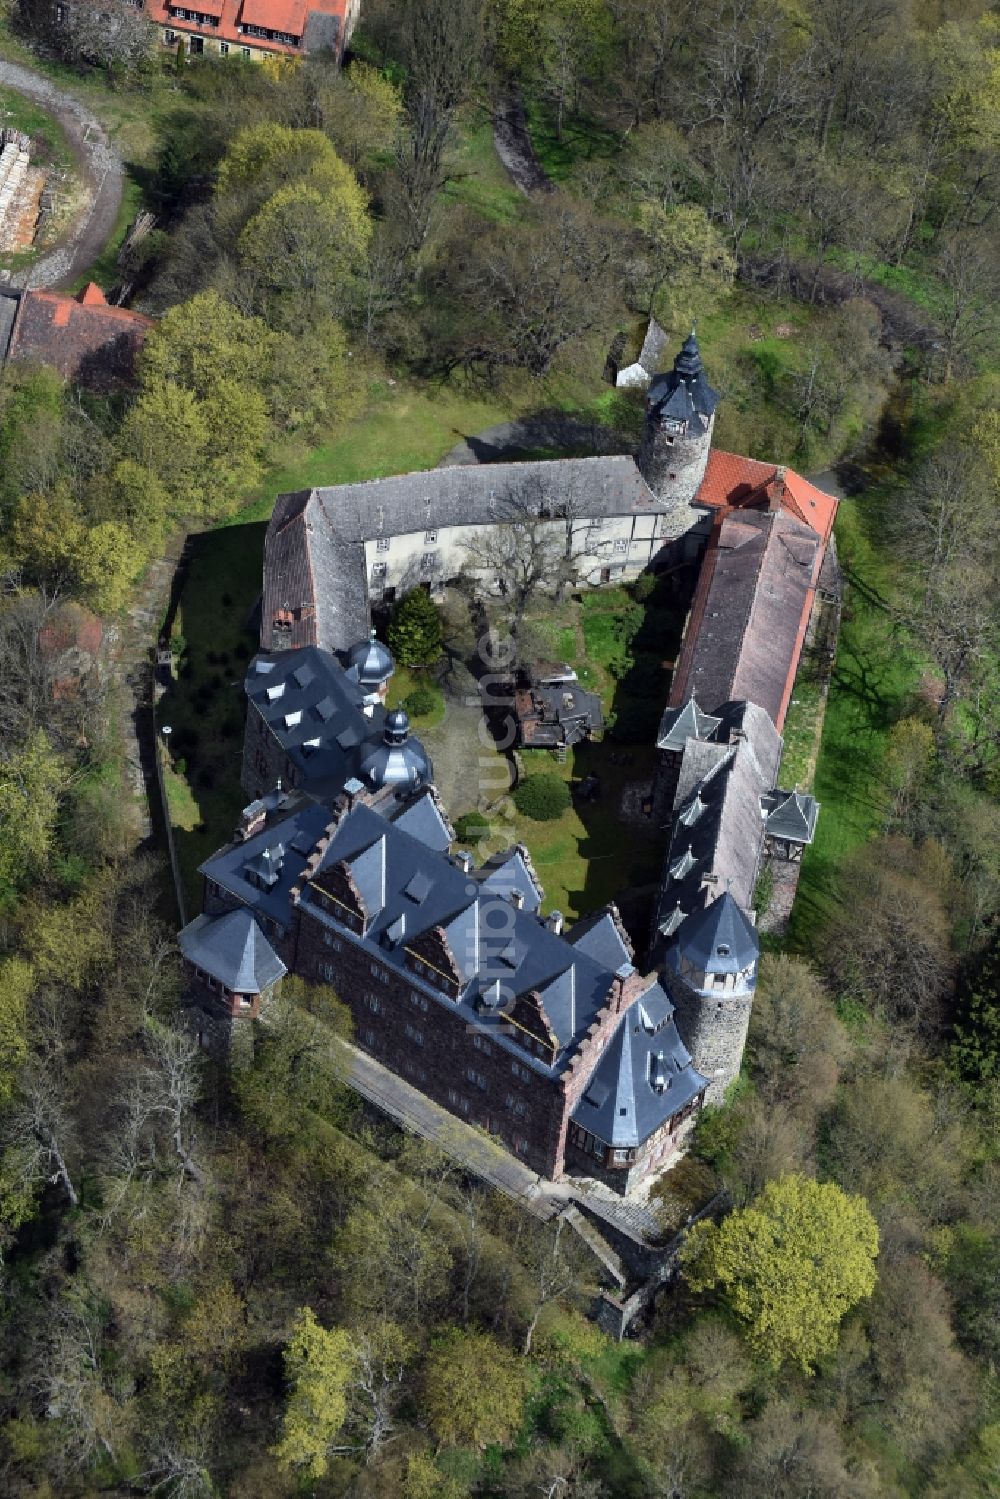 Friesdorf von oben - Burganlage des Schloss Rammelburg in Friesdorf im Bundesland Sachsen-Anhalt